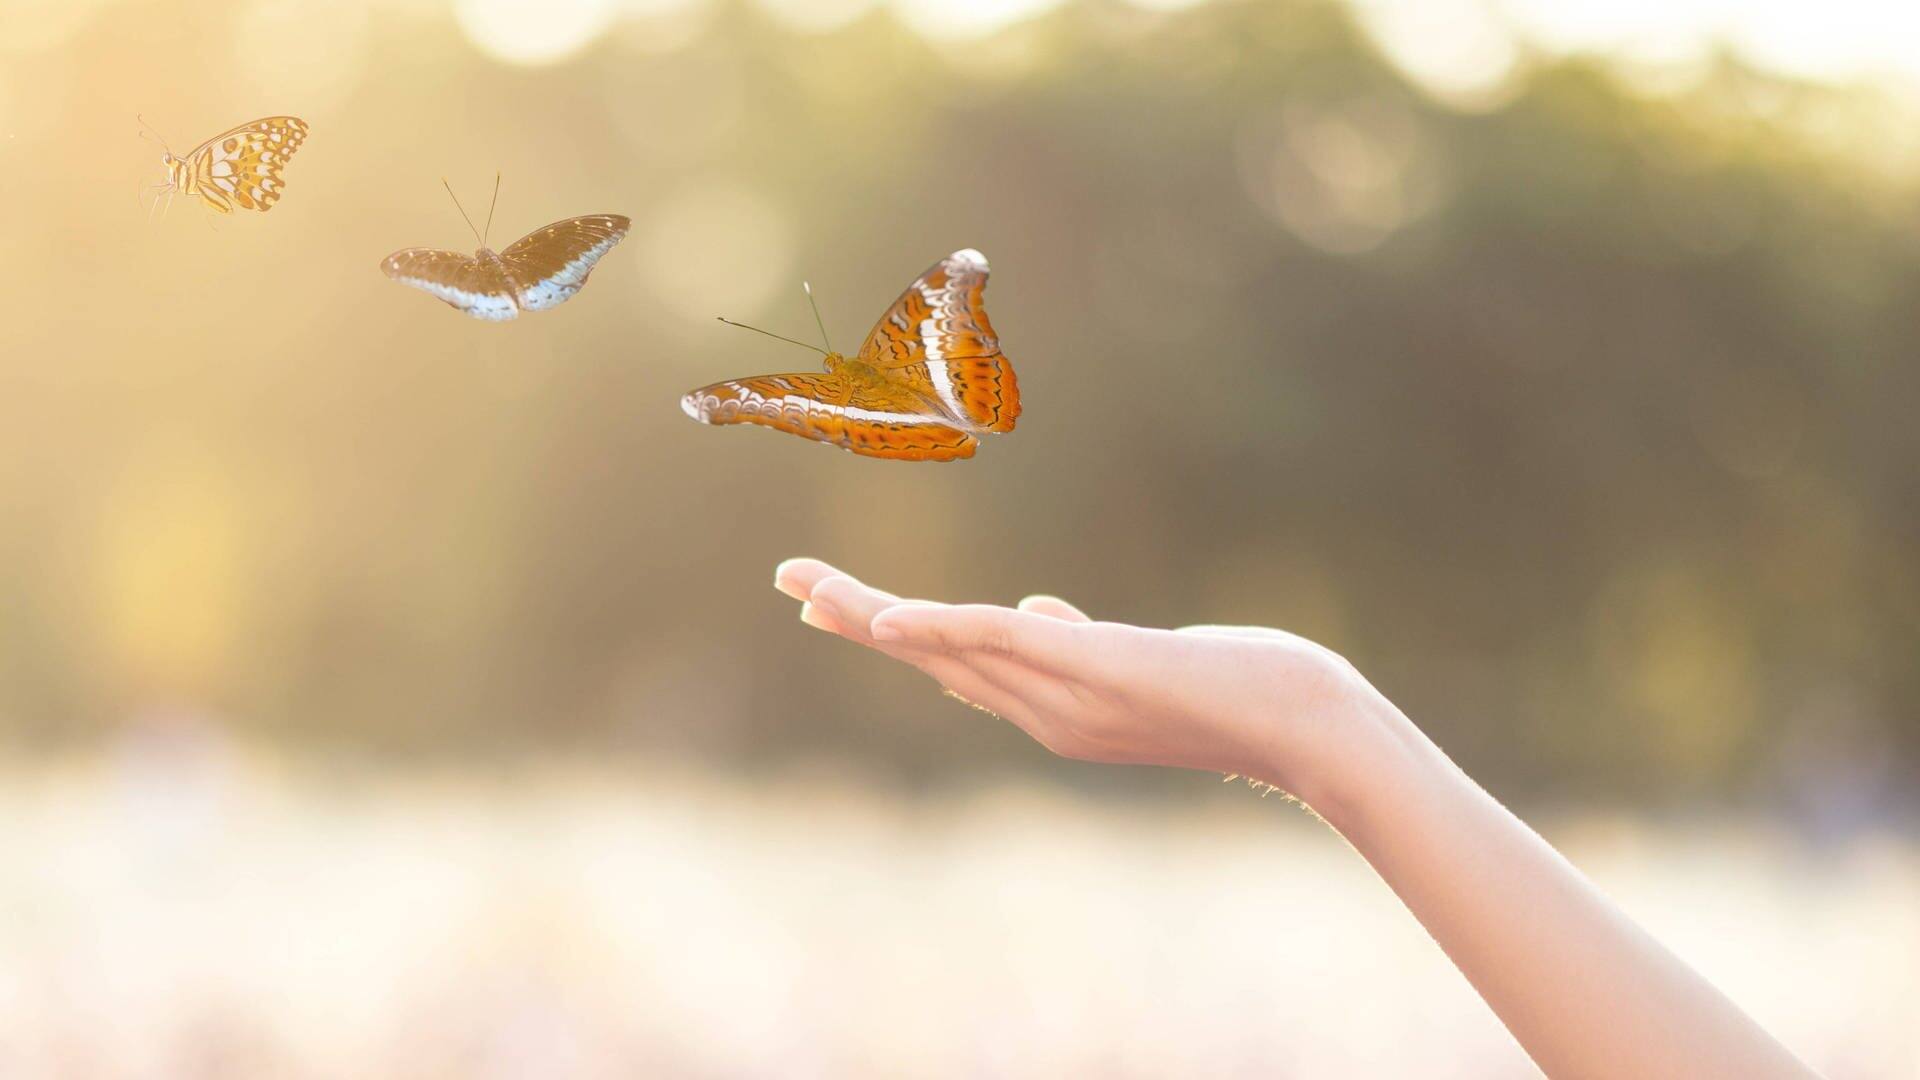 Schmetterlinge fliegen von einer ausgestreckten Hand (Foto: IMAGO, YAY Images)